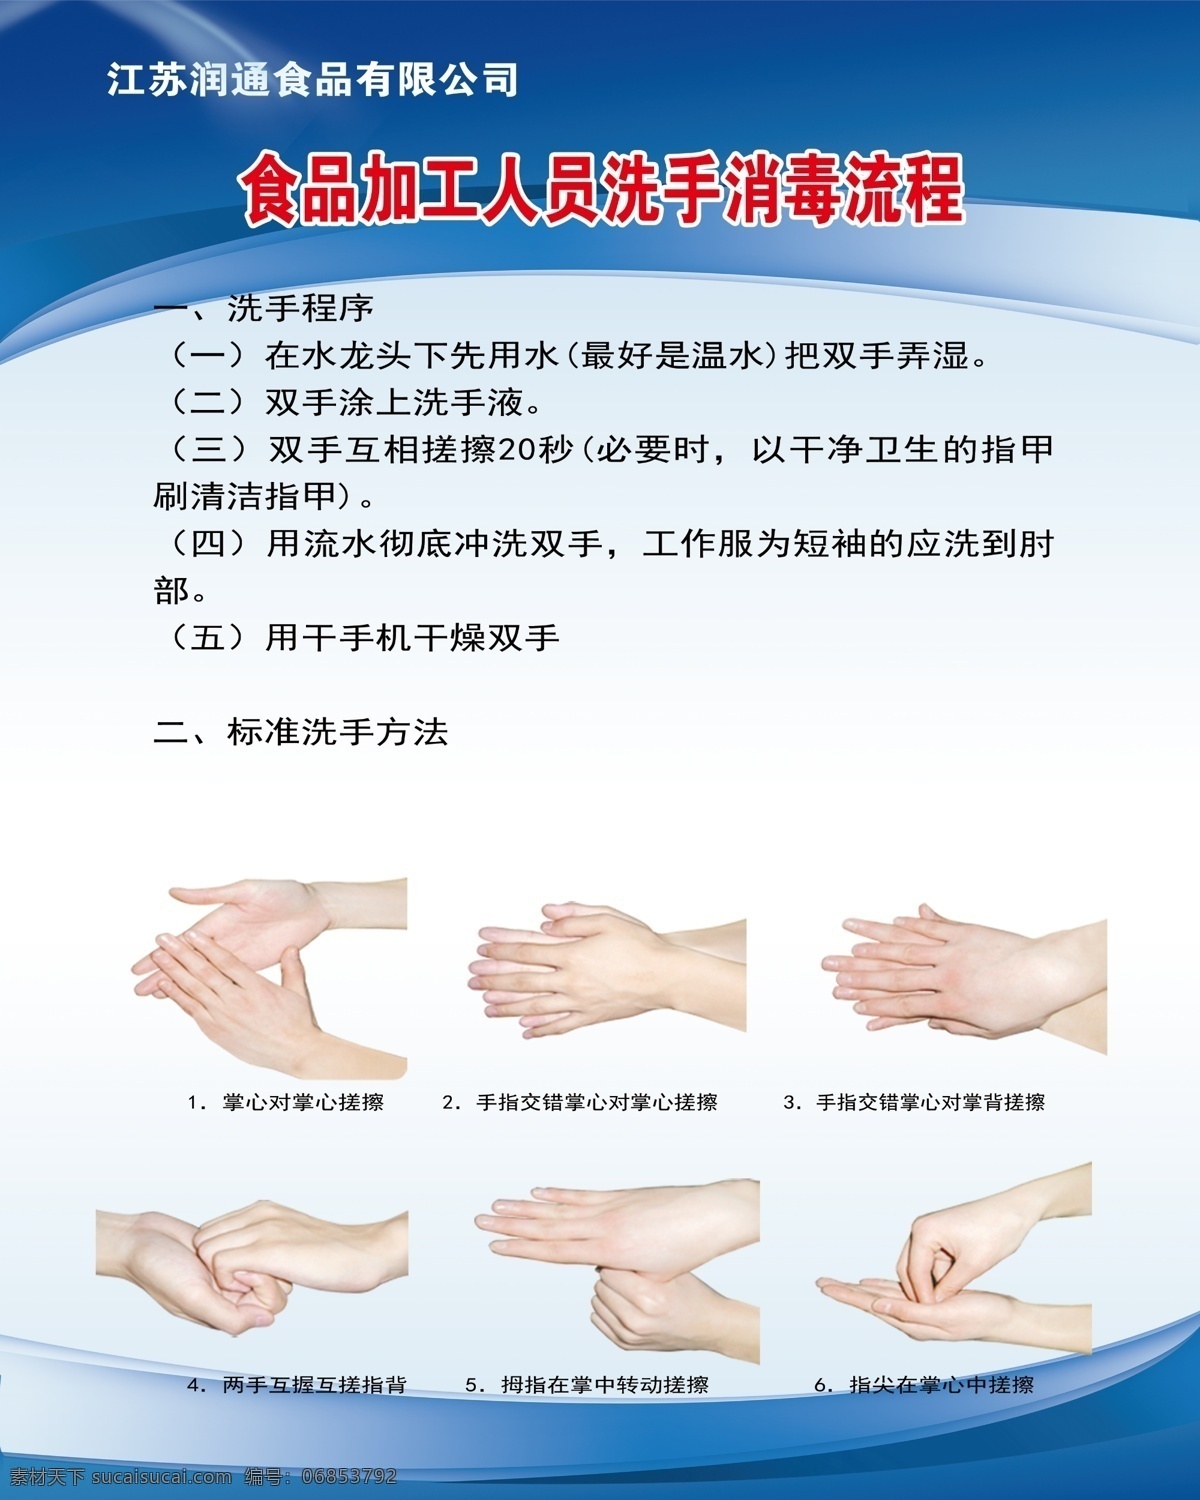 洗手消毒流程 洗手 洗手消毒 工业流程 洗手图 现代科技 工业生产